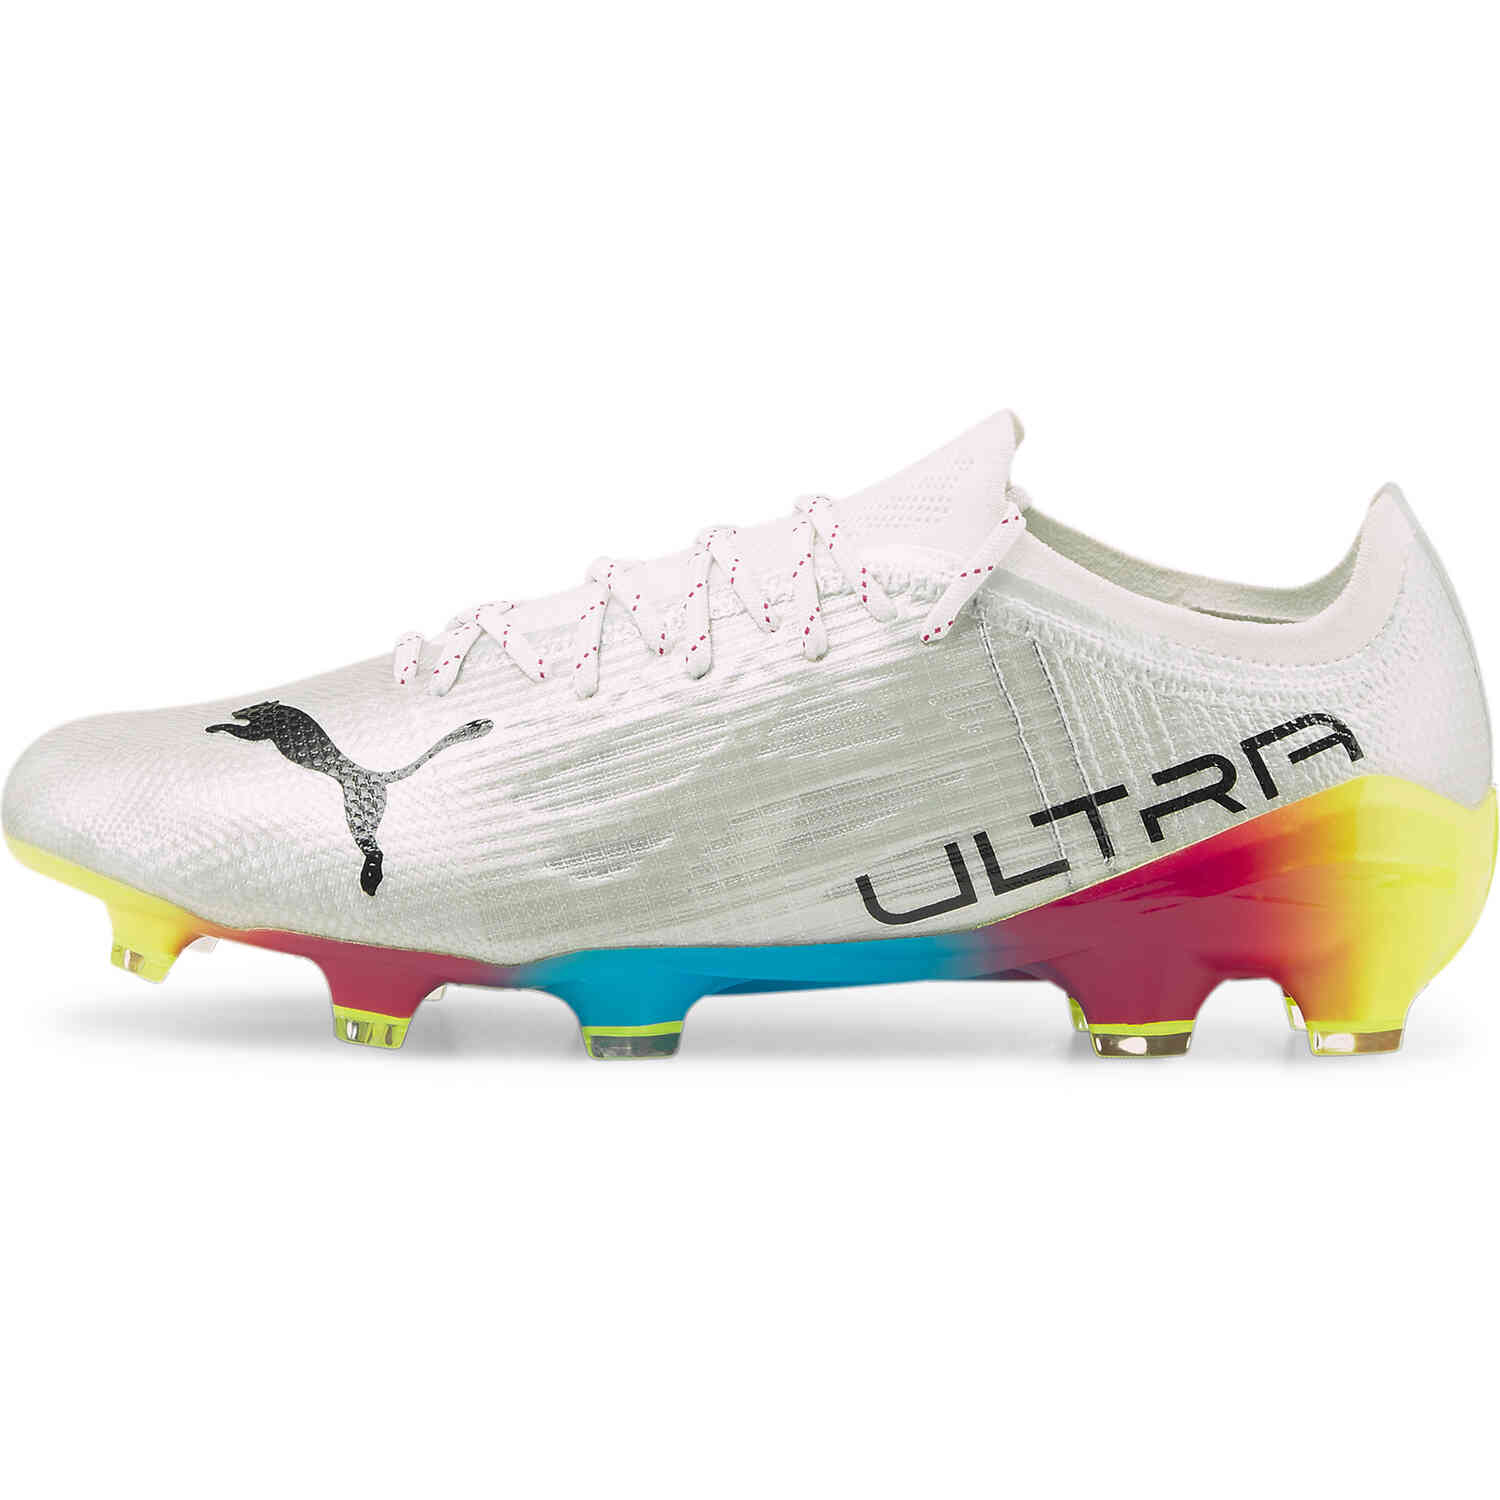 Puma Ultra 1.4 FG - Thrill Pack - SoccerPro